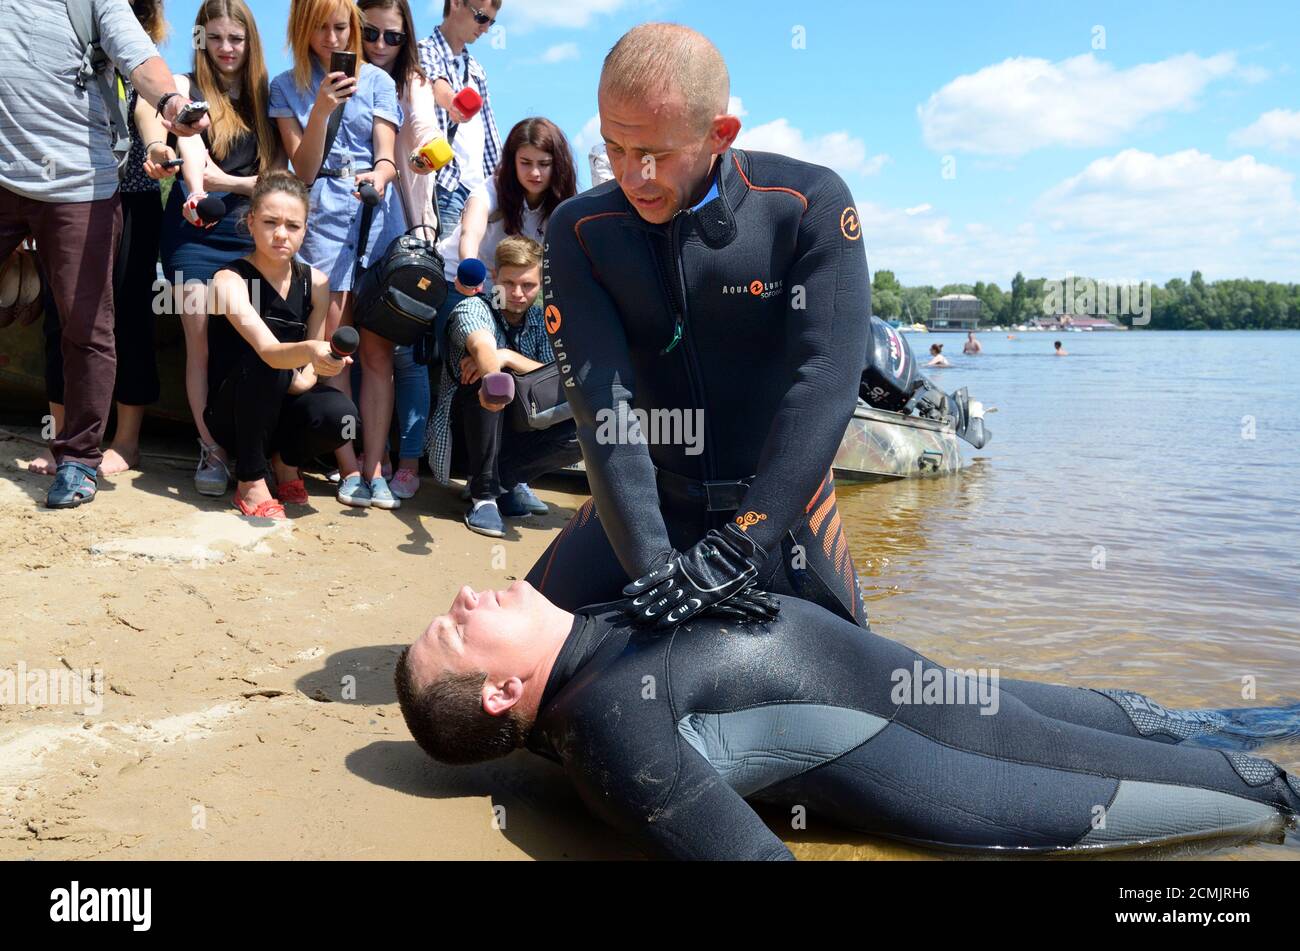 Leçon de respiration artificielle. Le secouriste appuie sur la poitrine de la noyade à la main. 12 juin 2018. Kiev, Ukraine Banque D'Images